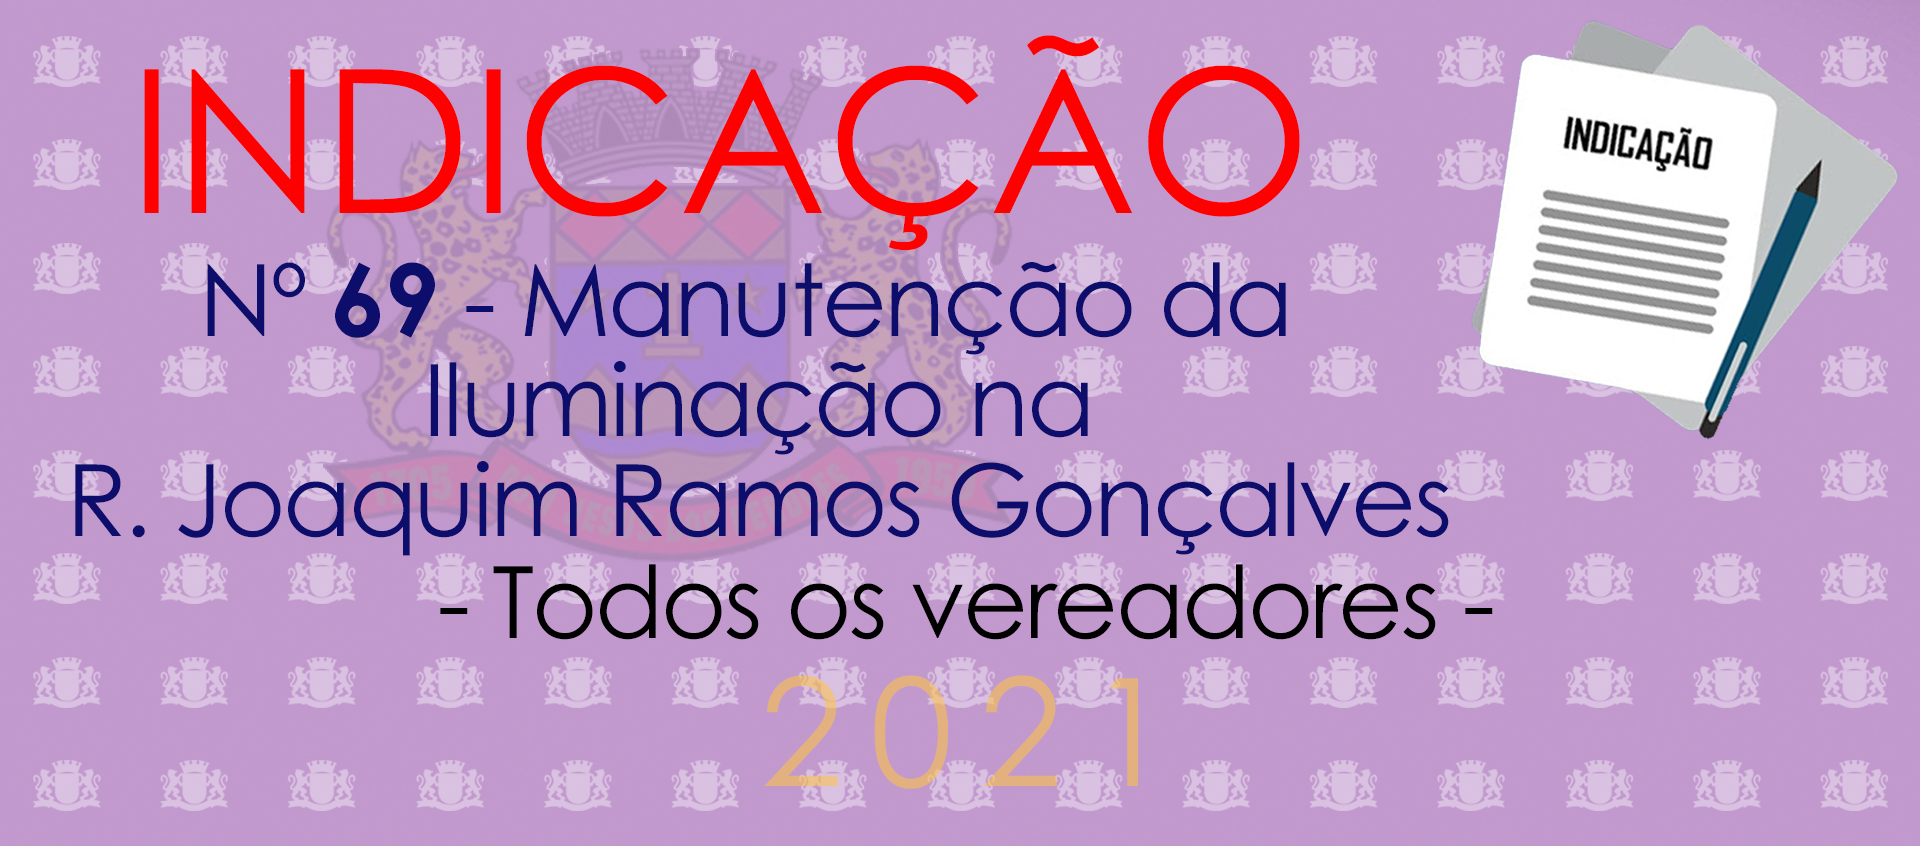 Indicação 69-2021 - Manuntenção de iluminação na Joaquim Ramos Gonçalves